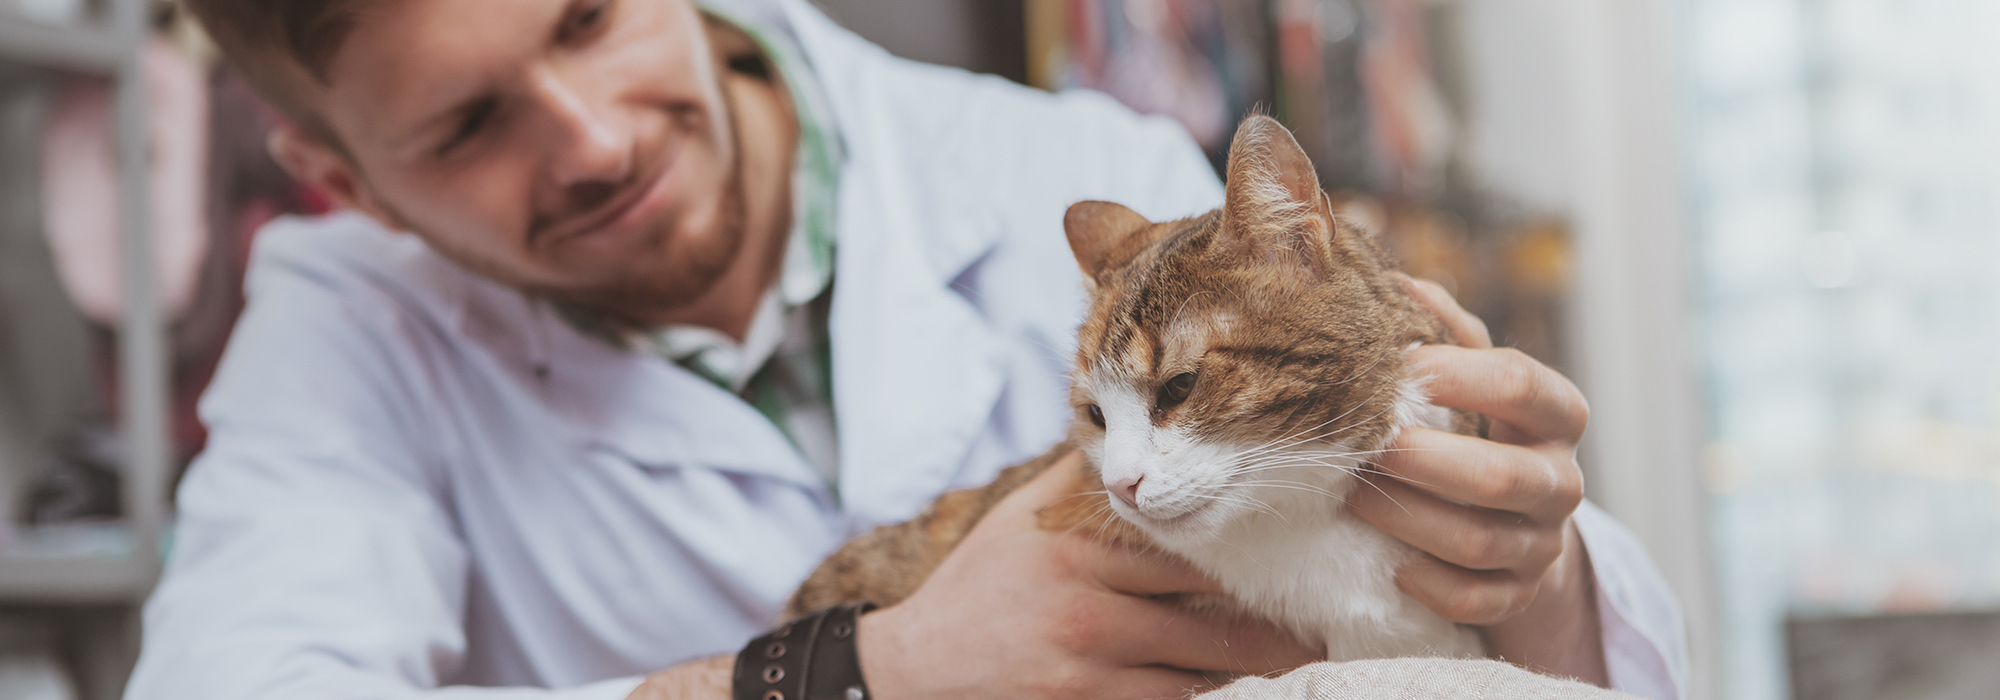 Veterinary Surgeon and Cat